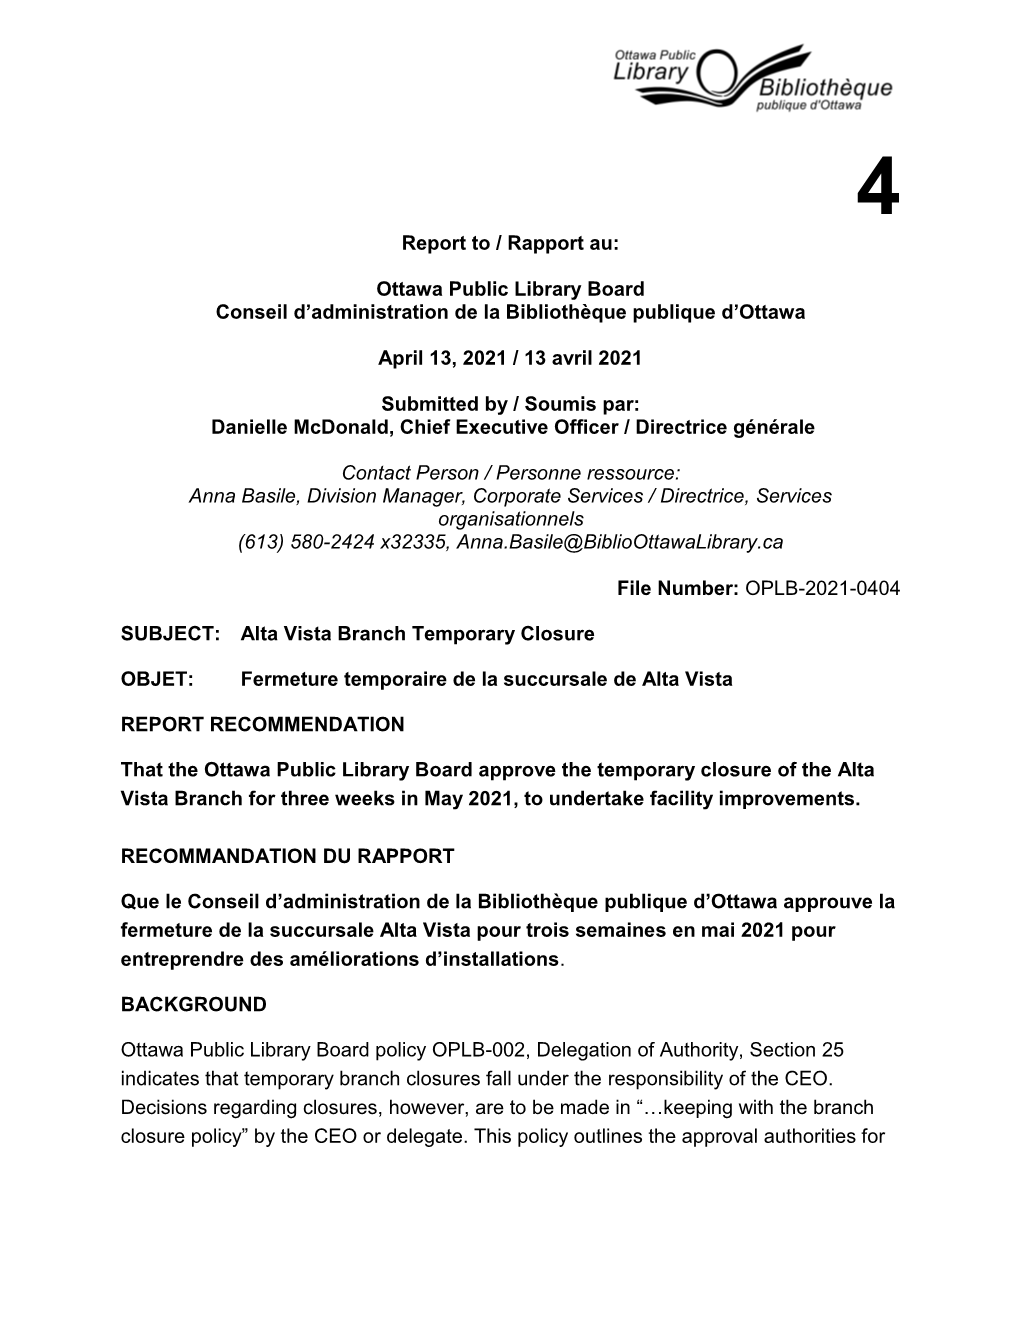 Report to / Rapport Au: Ottawa Public Library Board Conseil D